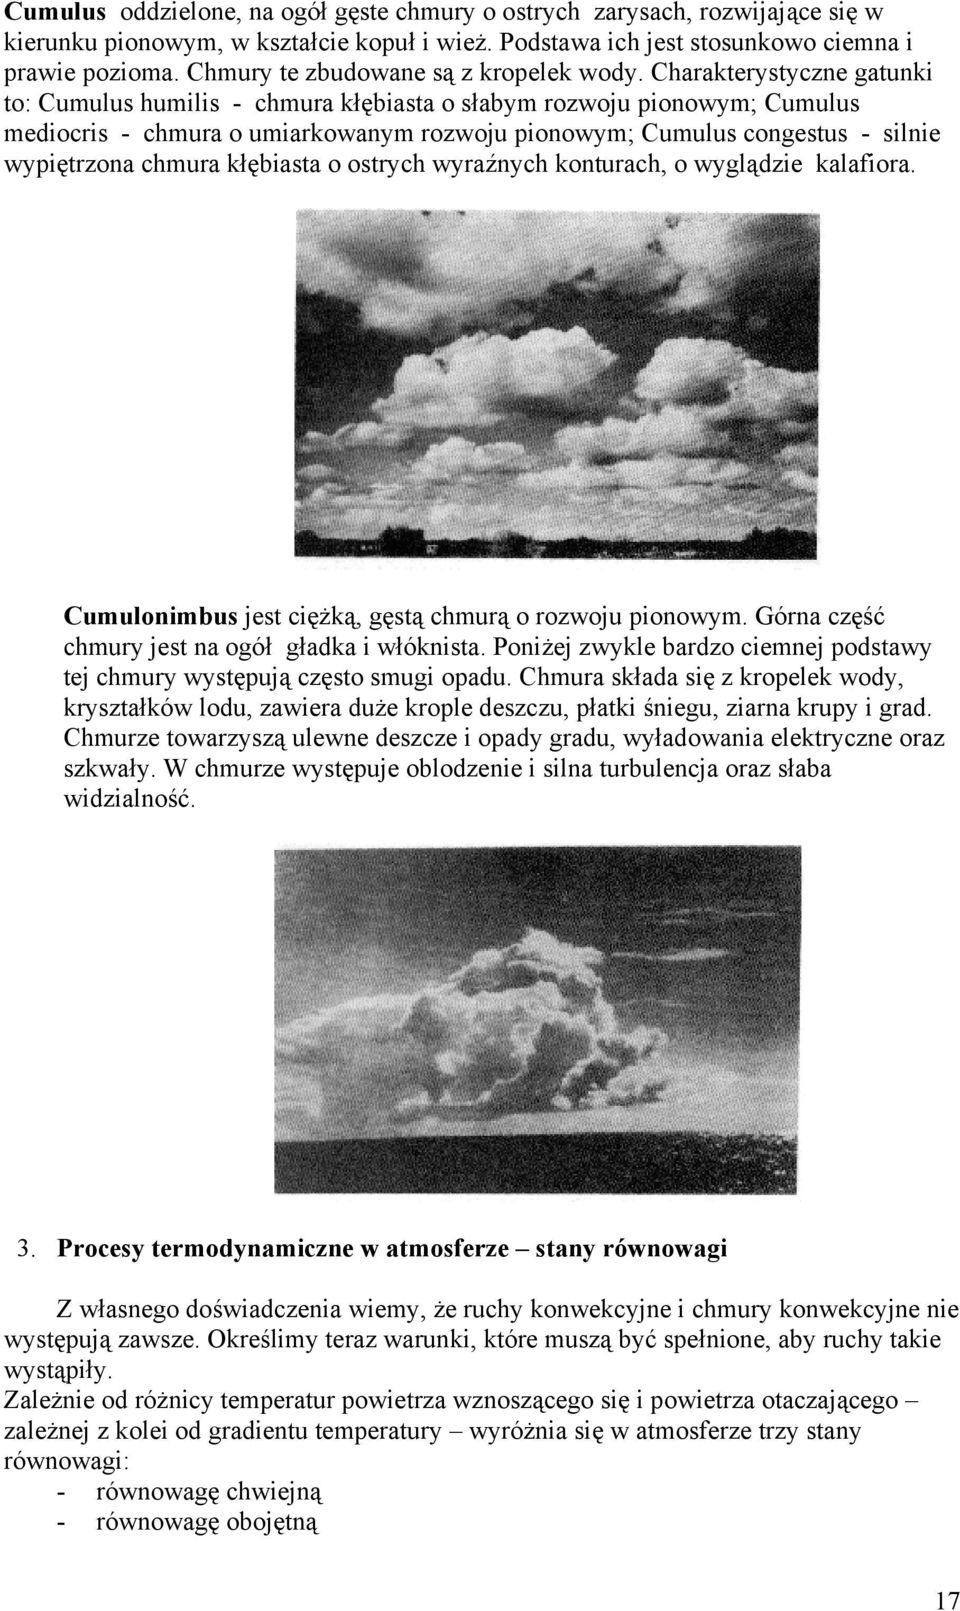 Charakterystyczne gatunki to: Cumulus humilis - chmura kłębiasta o słabym rozwoju pionowym; Cumulus mediocris - chmura o umiarkowanym rozwoju pionowym; Cumulus congestus - silnie wypiętrzona chmura